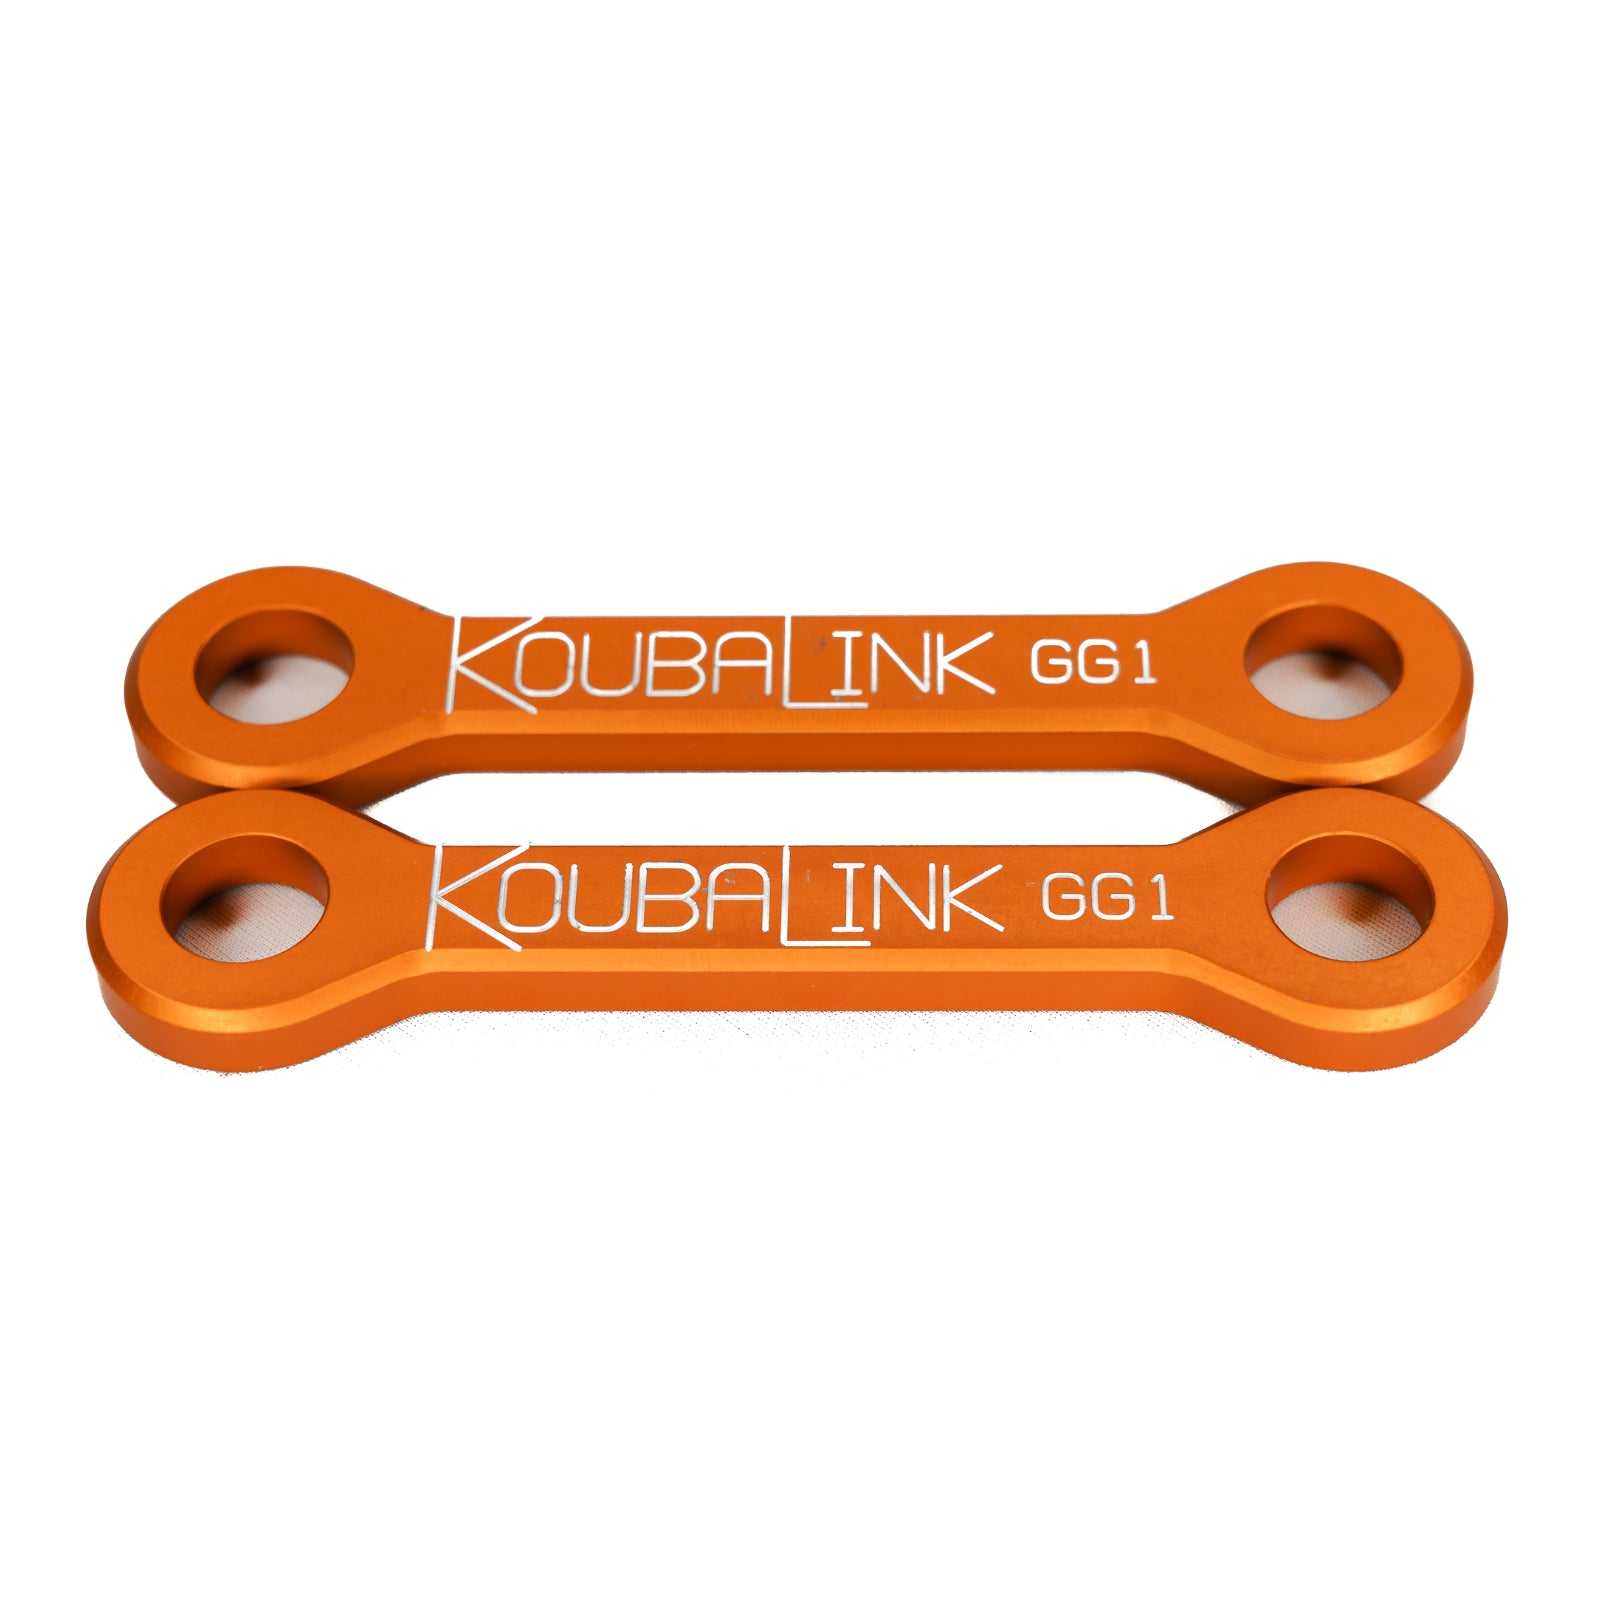 KoubaLink, Koubalink 19–35 mm Tieferlegungsgestänge GG1 – Orange